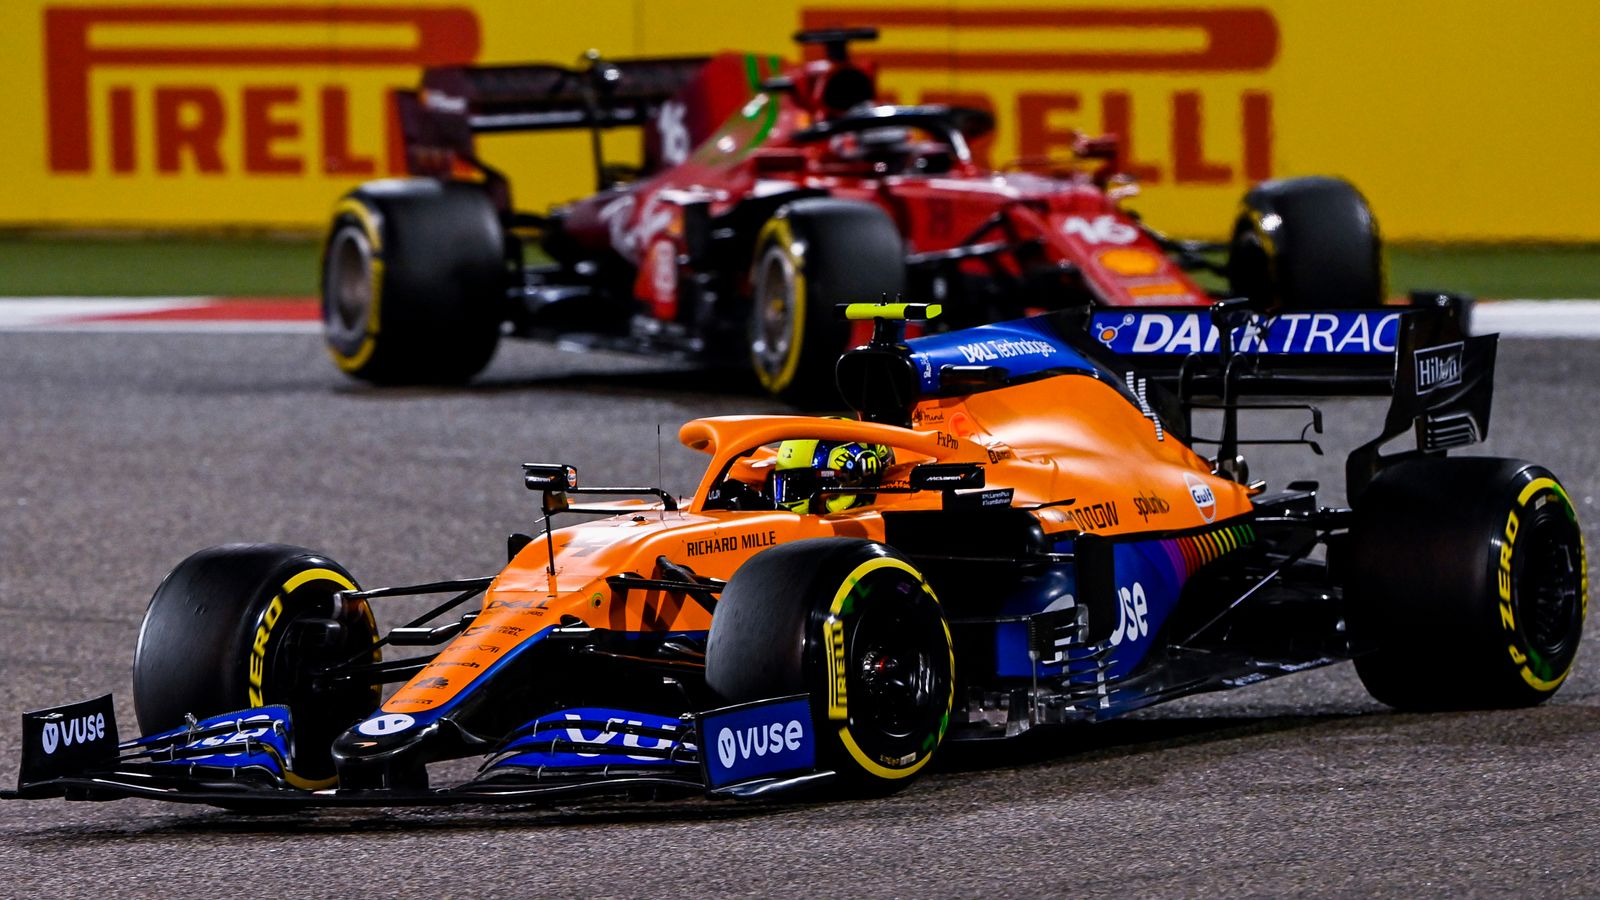 La nuova battaglia di F1 tra McLaren e Ferrari: Mark Hughes su come i Titani si confrontano con la storia all’inizio del 2021